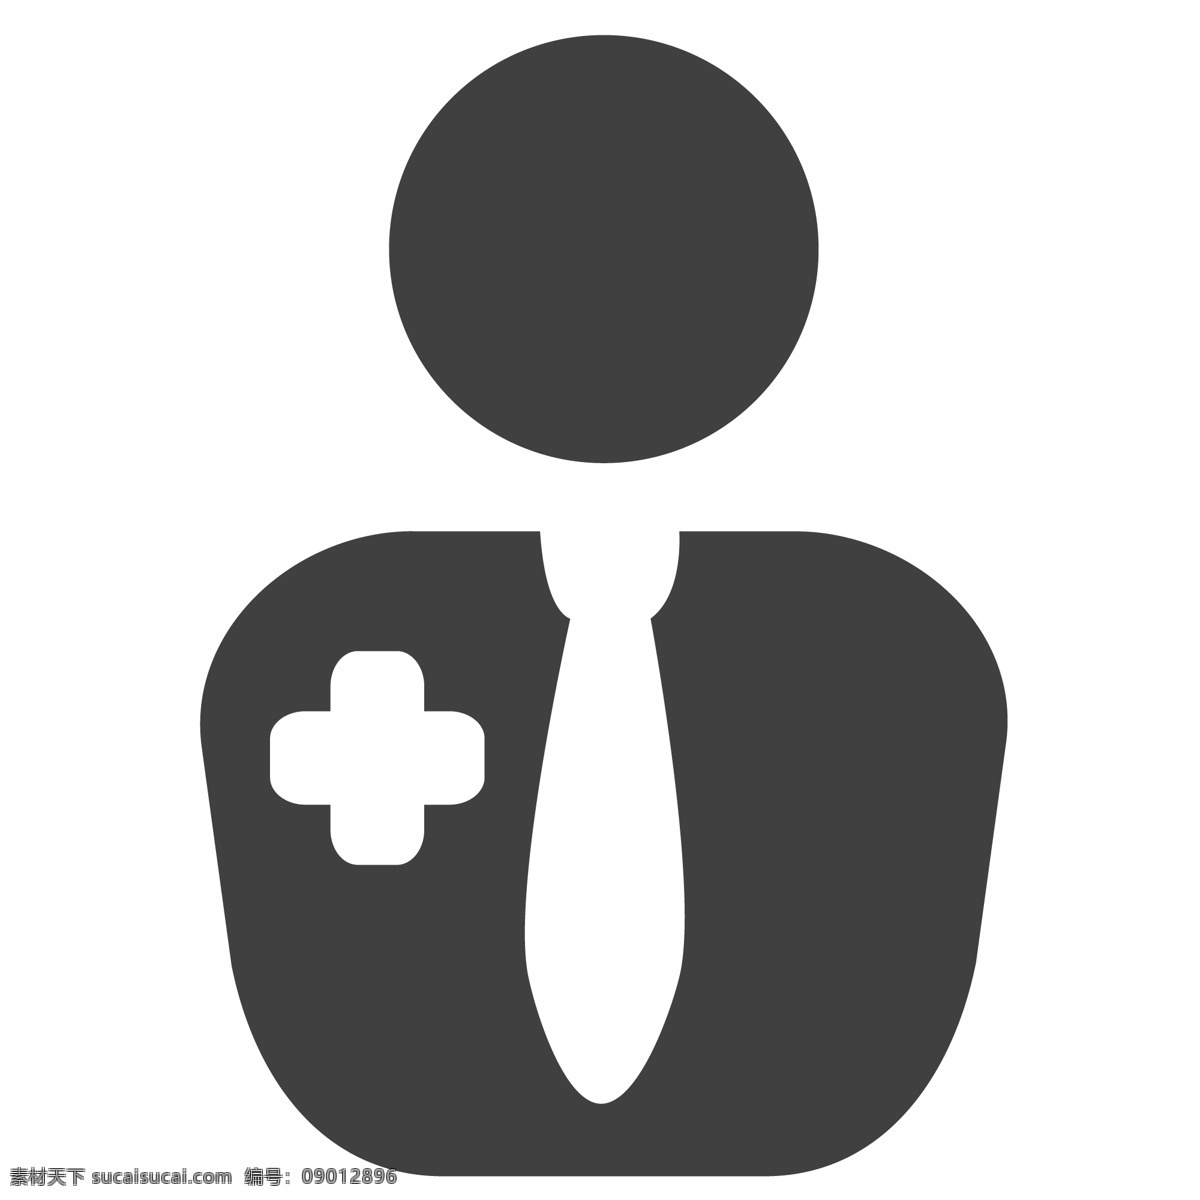 卡通 医务 工作者 医生 人物 头像 生活图标 卡通图标 黑色的图标 手机图标 智能图标设计